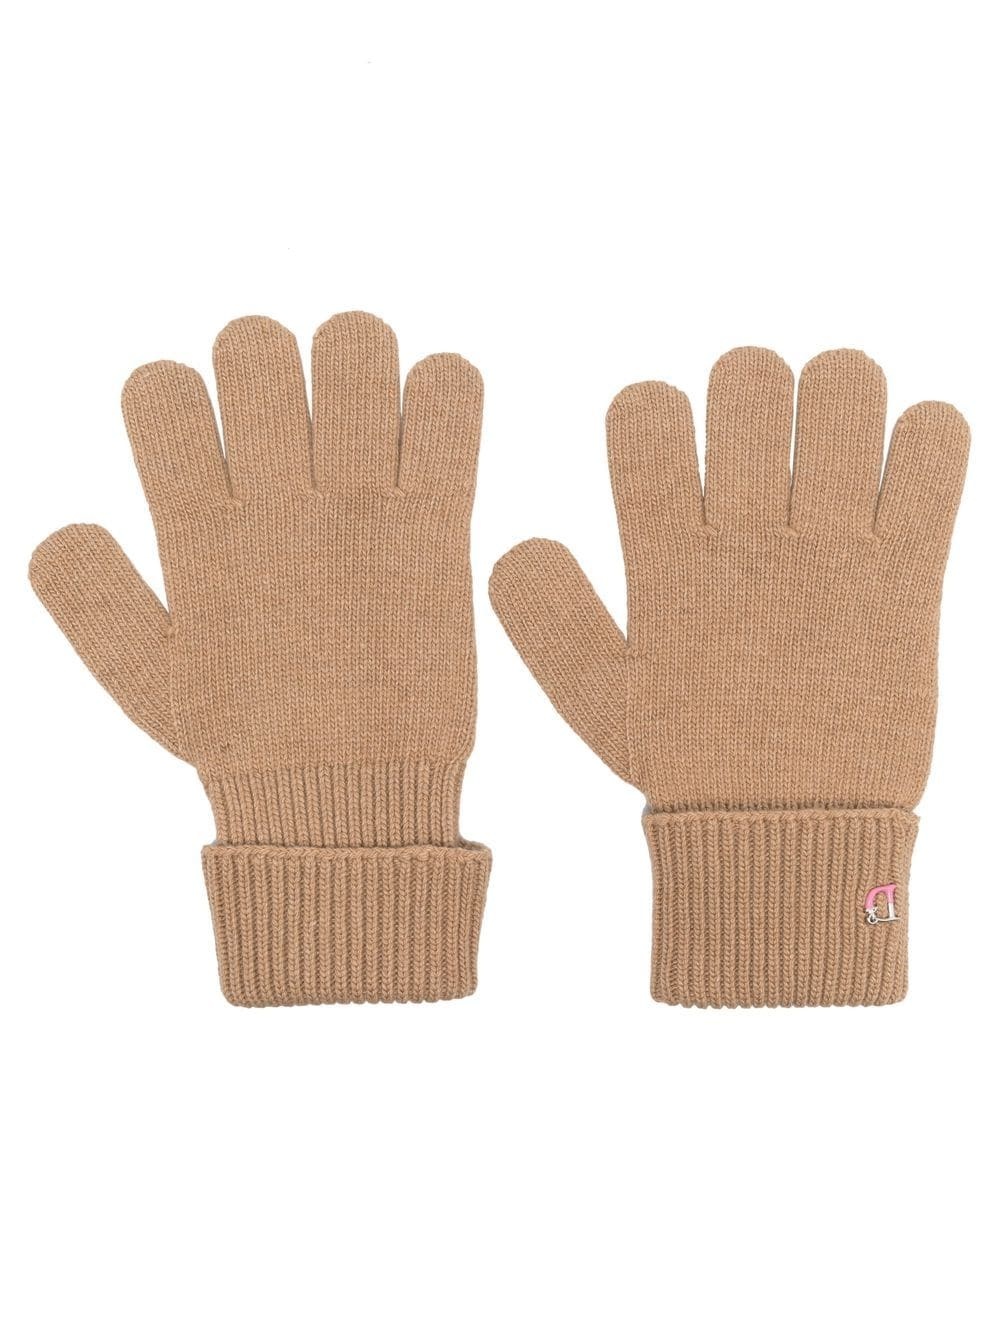 monogram-detail gloves - 1